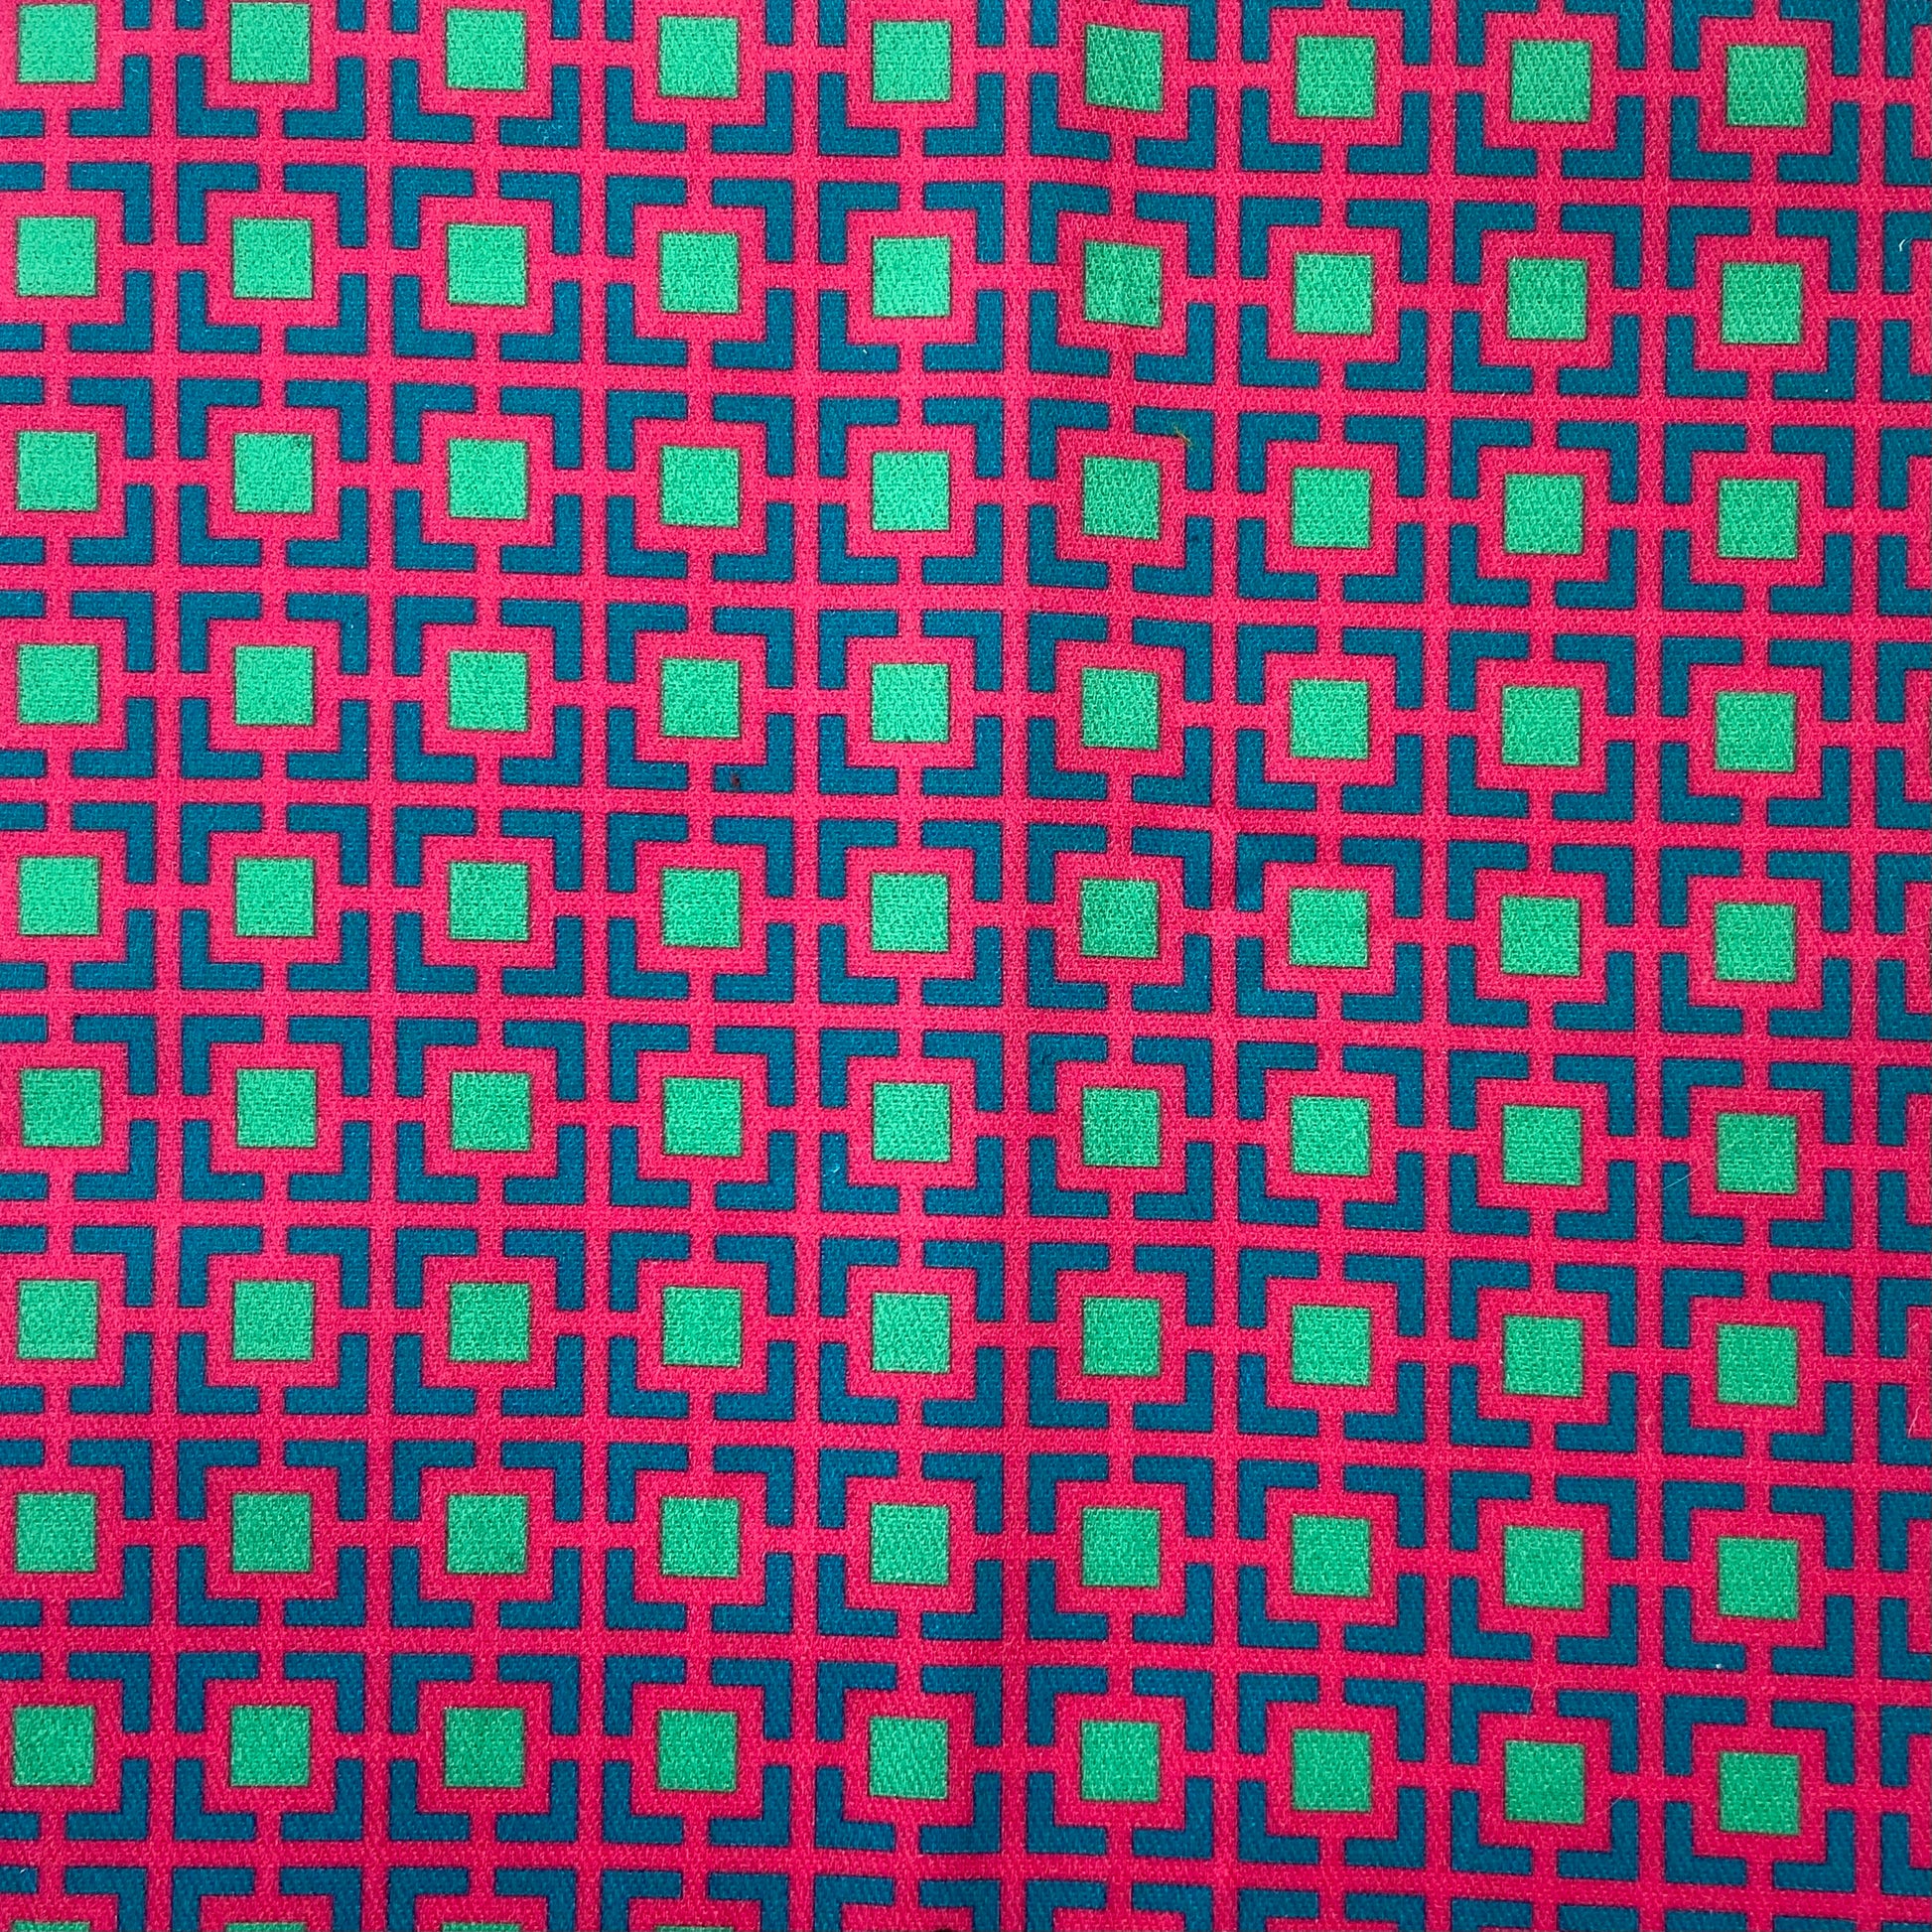 Sergé de coton imprimé motif carrés très colros fuschia bleu canadr paon turquoise vert d'eau contratse géométrique Cour Carrée dessin de jardins symétriques pop flashy rose vif vivid pink 